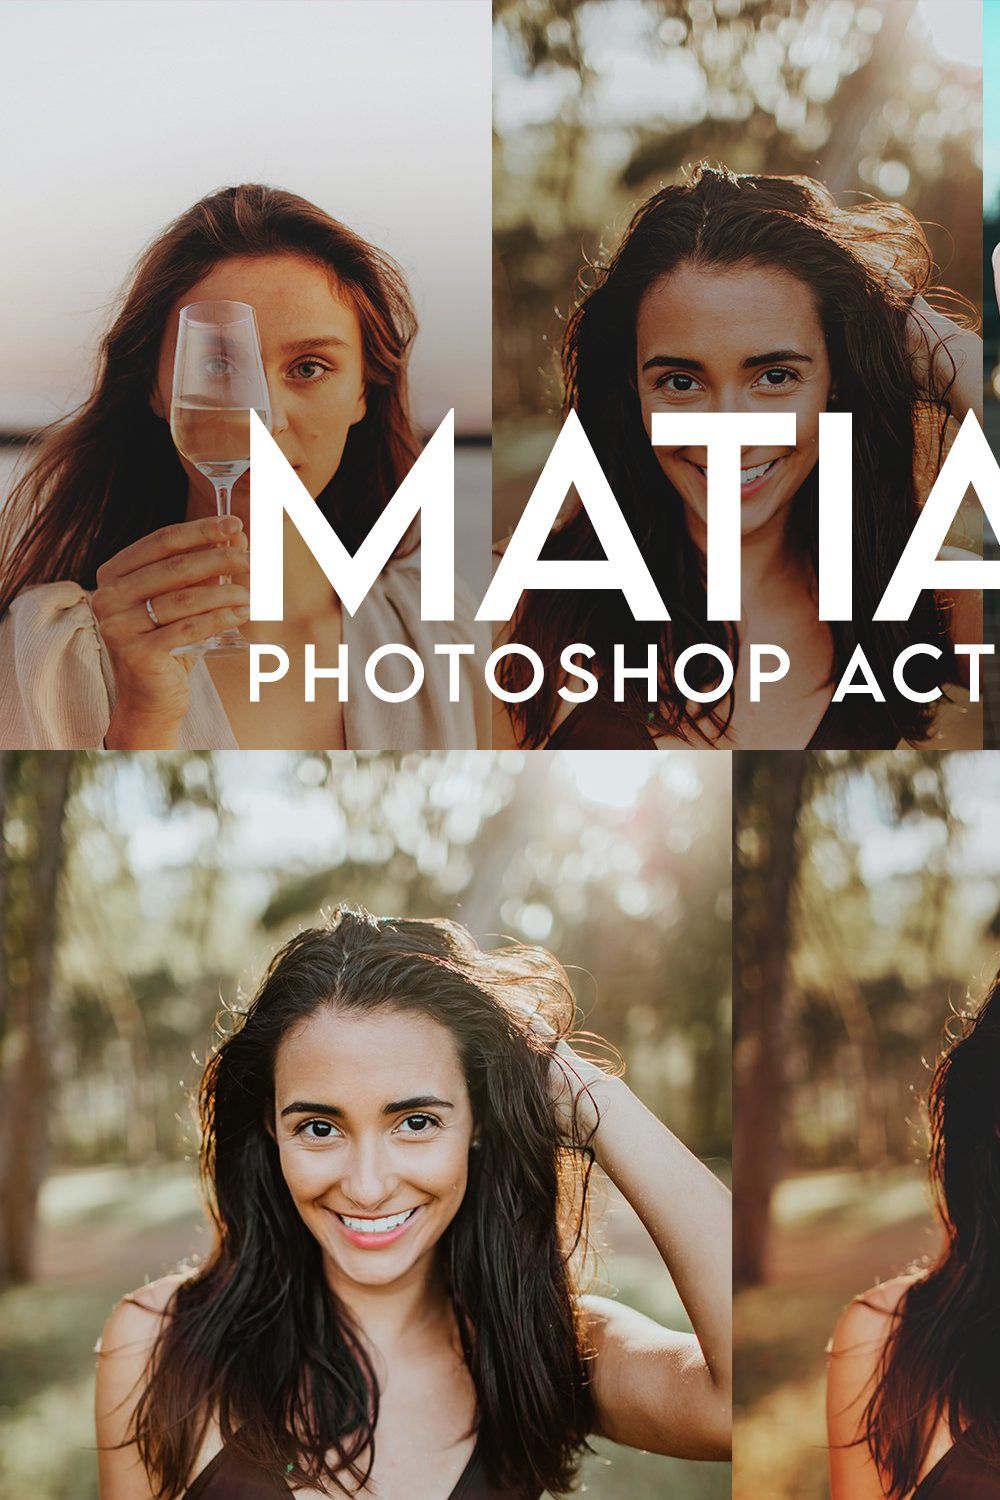 Matias Photoshop Actions pinterest preview image.